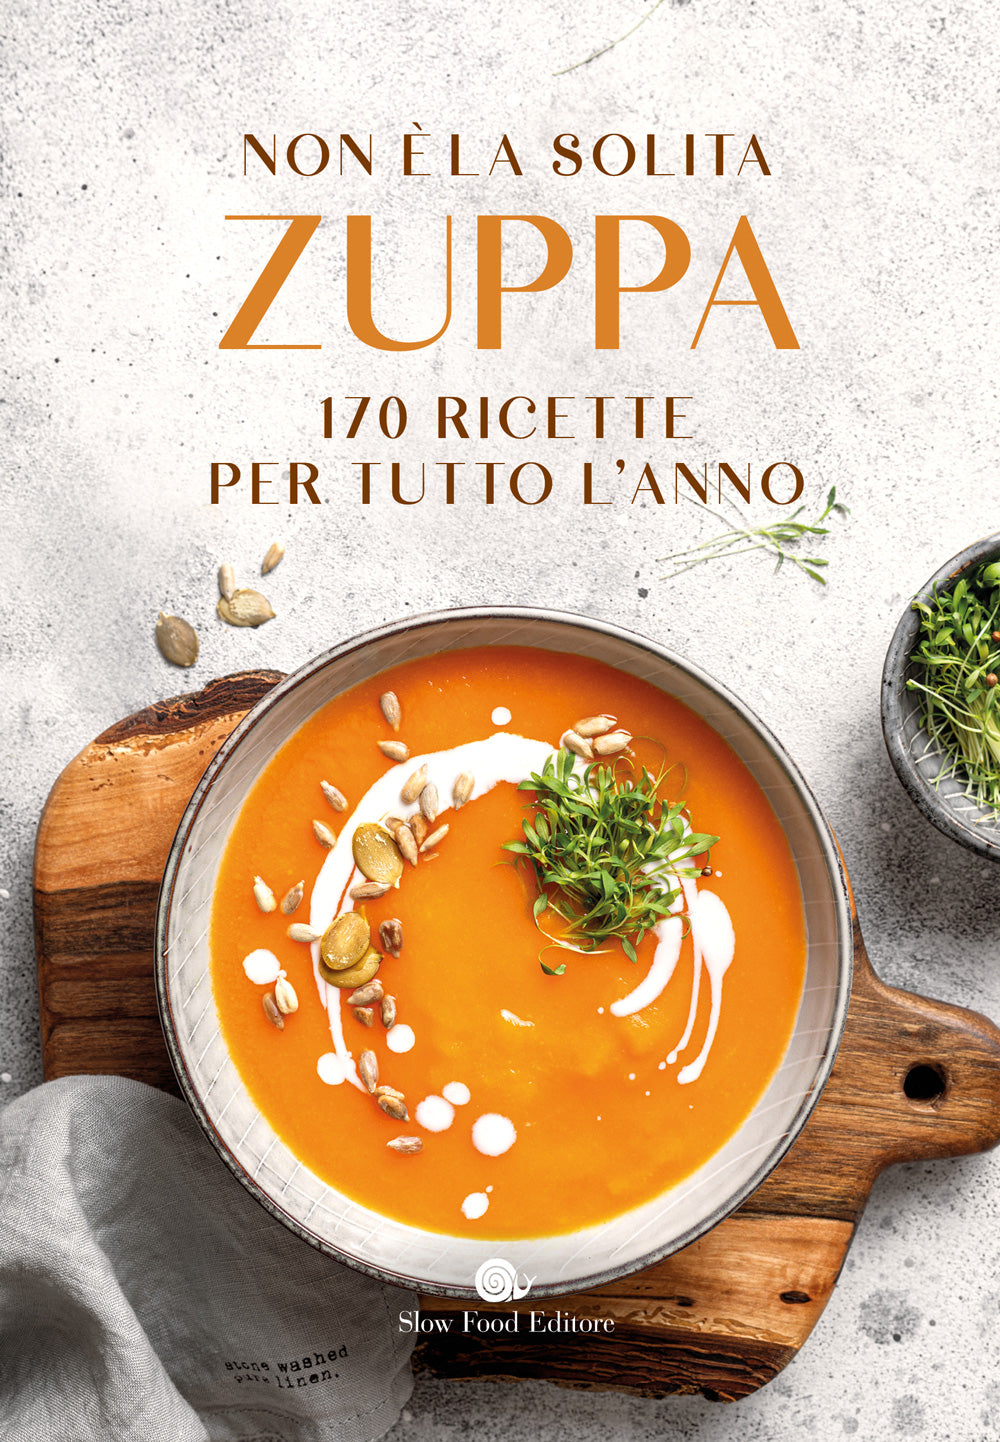 Non è la solita zuppa::170 ricette per tutto l'anno